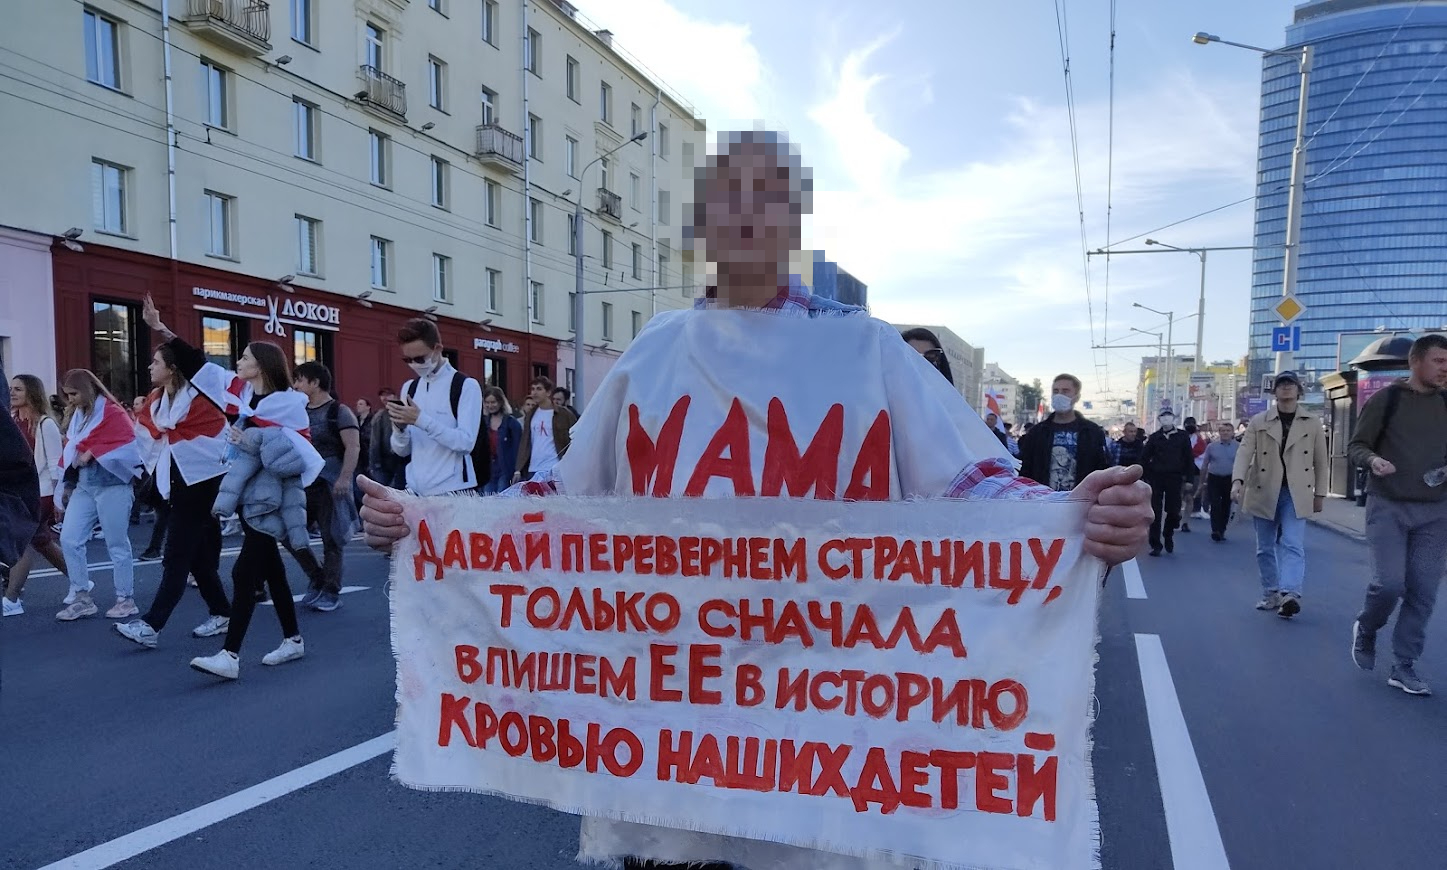 Нация, воспрявшая на протестных маршах: интервью со Светланой Алексиевич